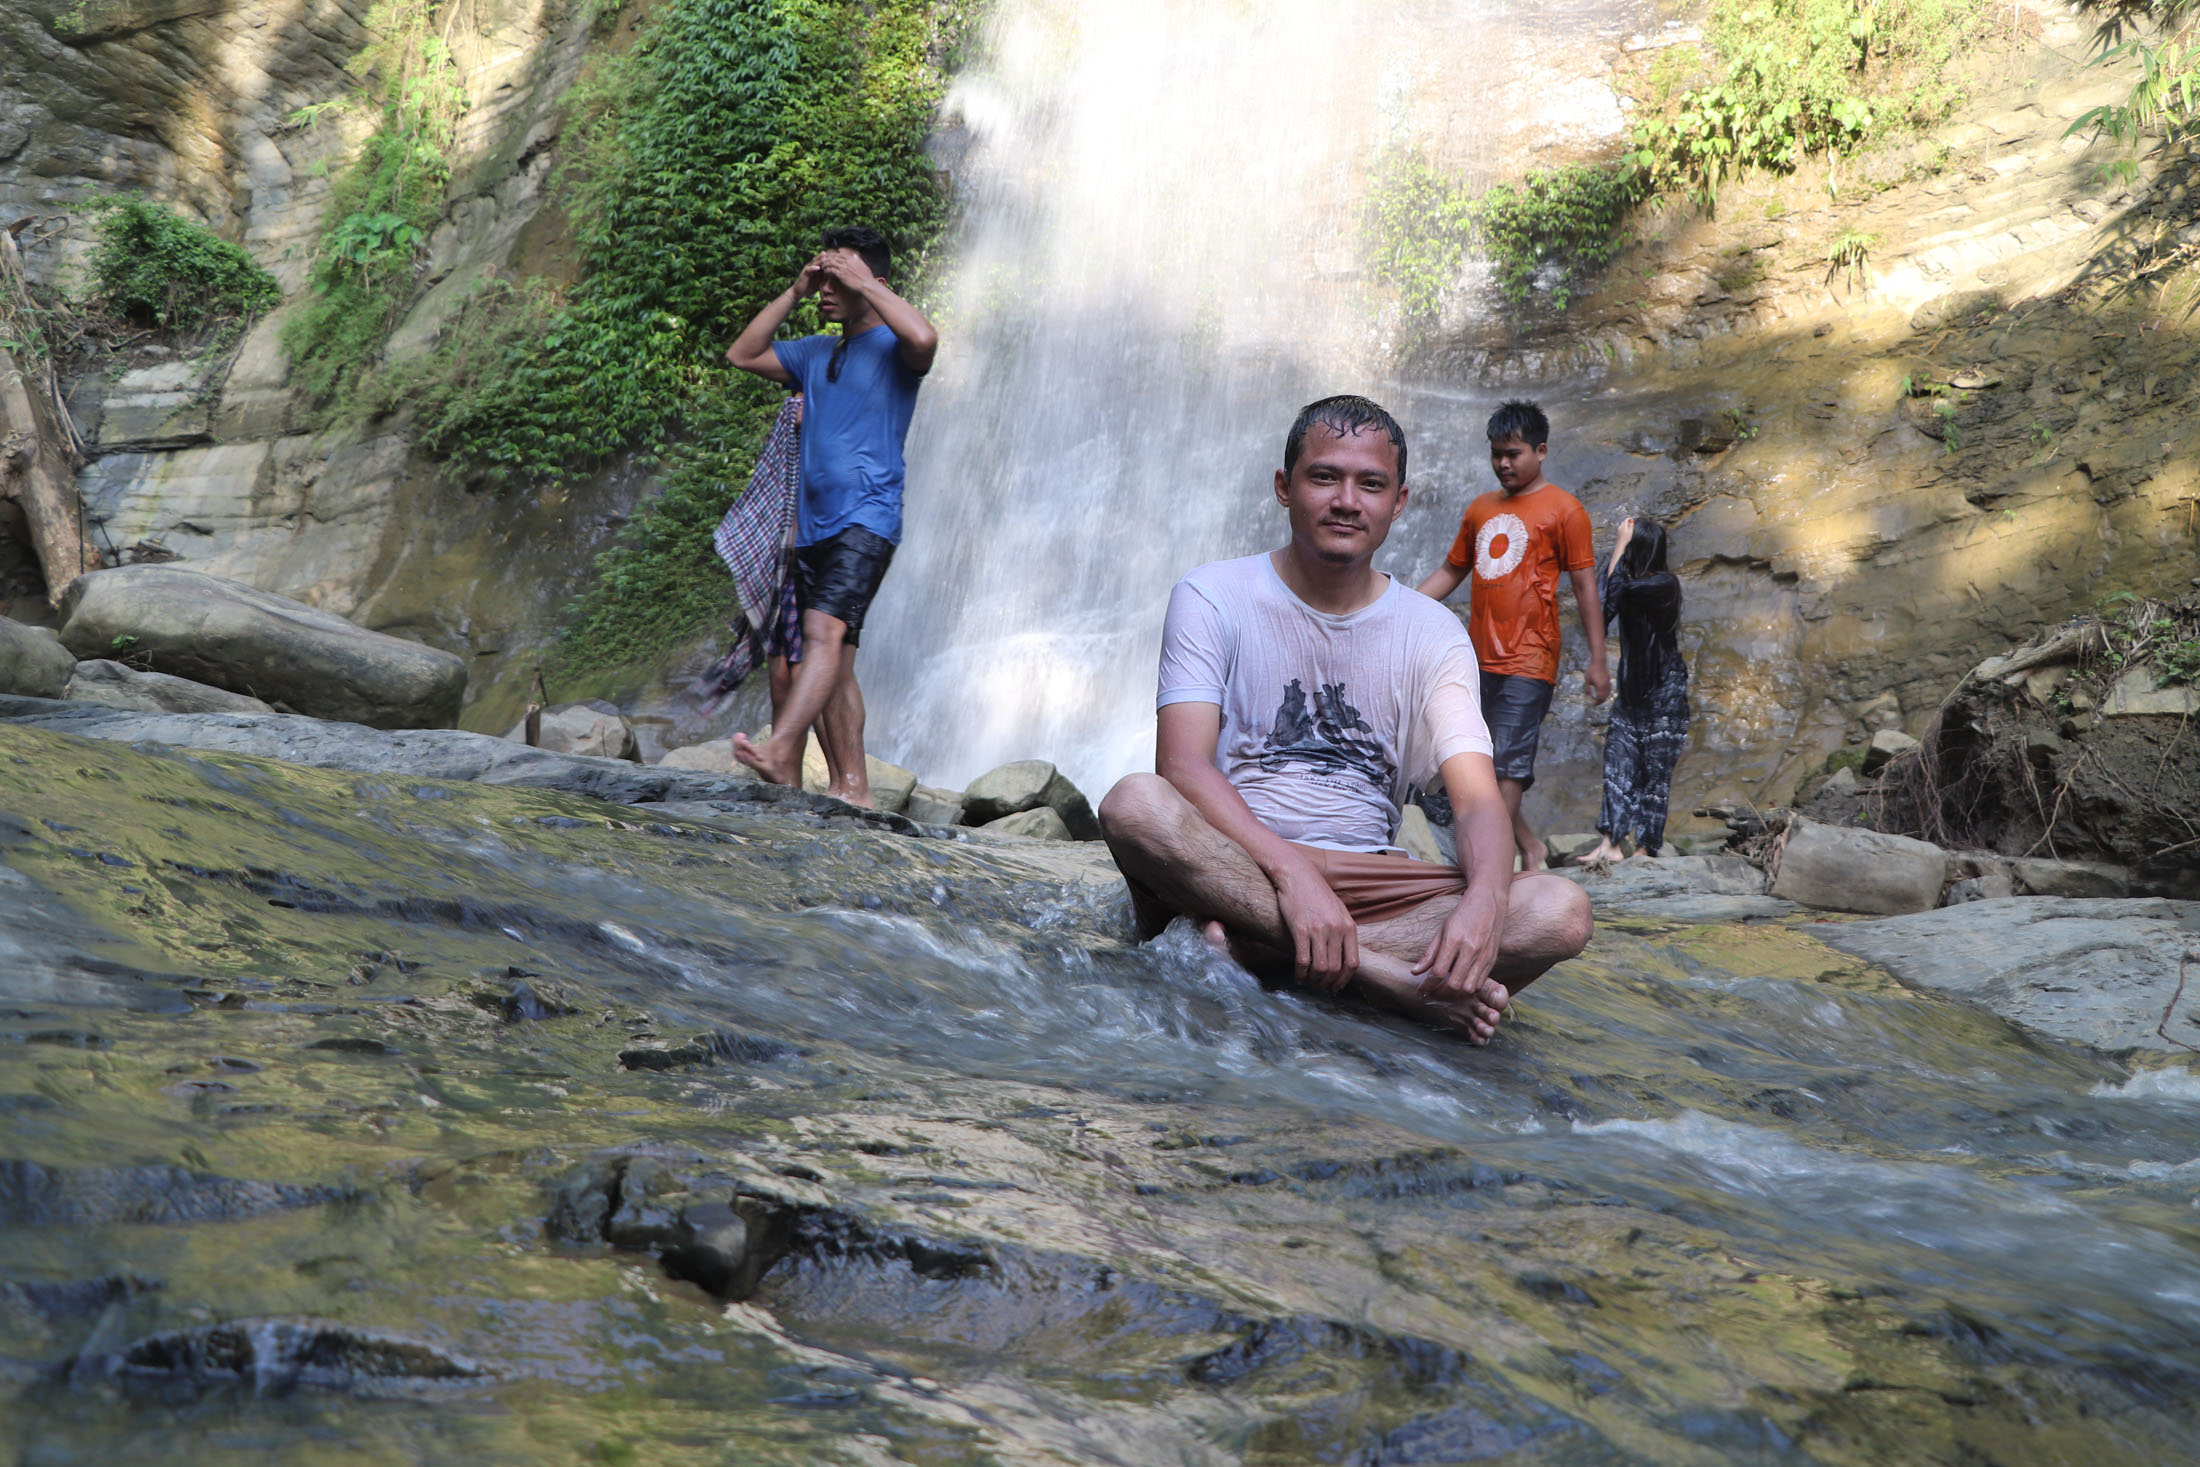 The Debotakhum Waterfall